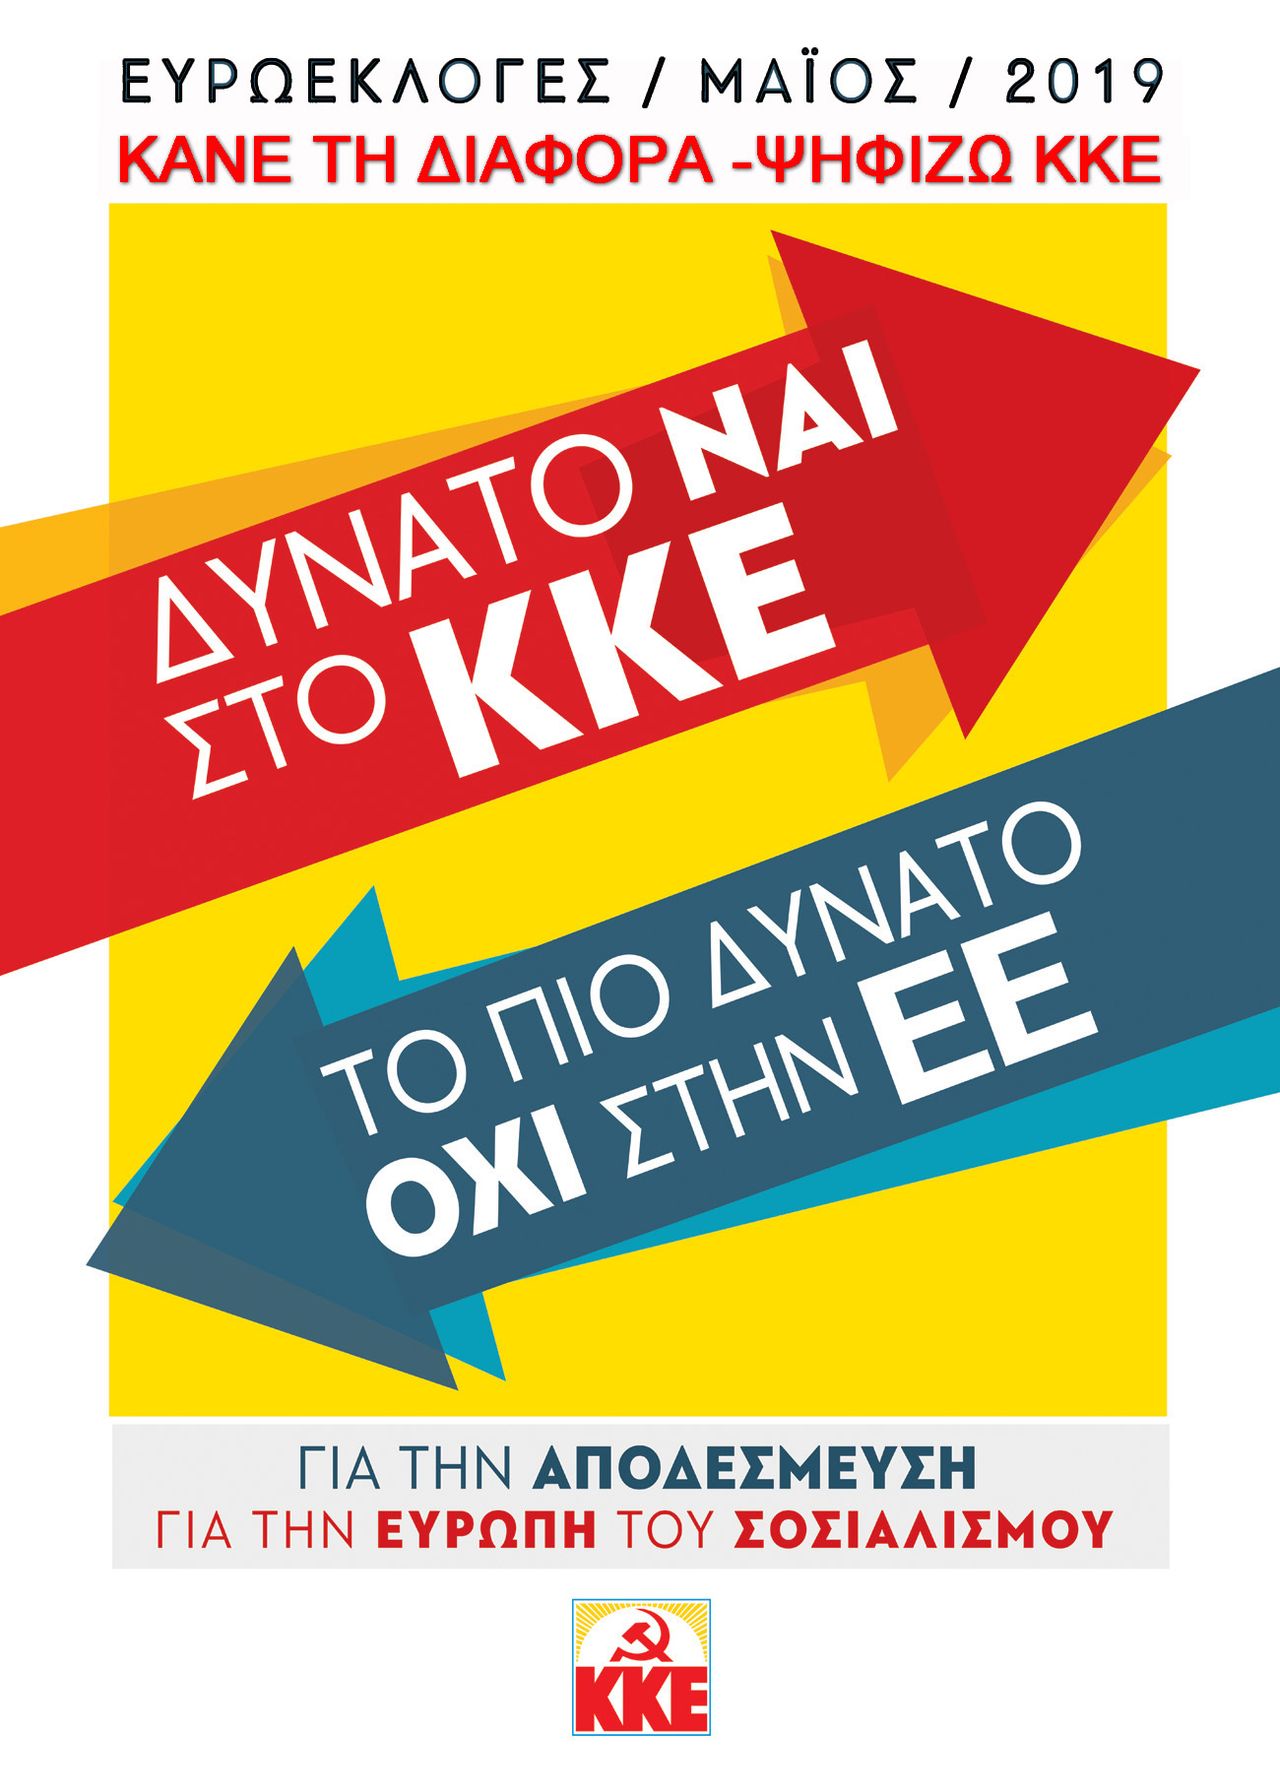 Κεντρική αφίσα του ΚΚΕ για τις Ευρωεκλογές 2019.